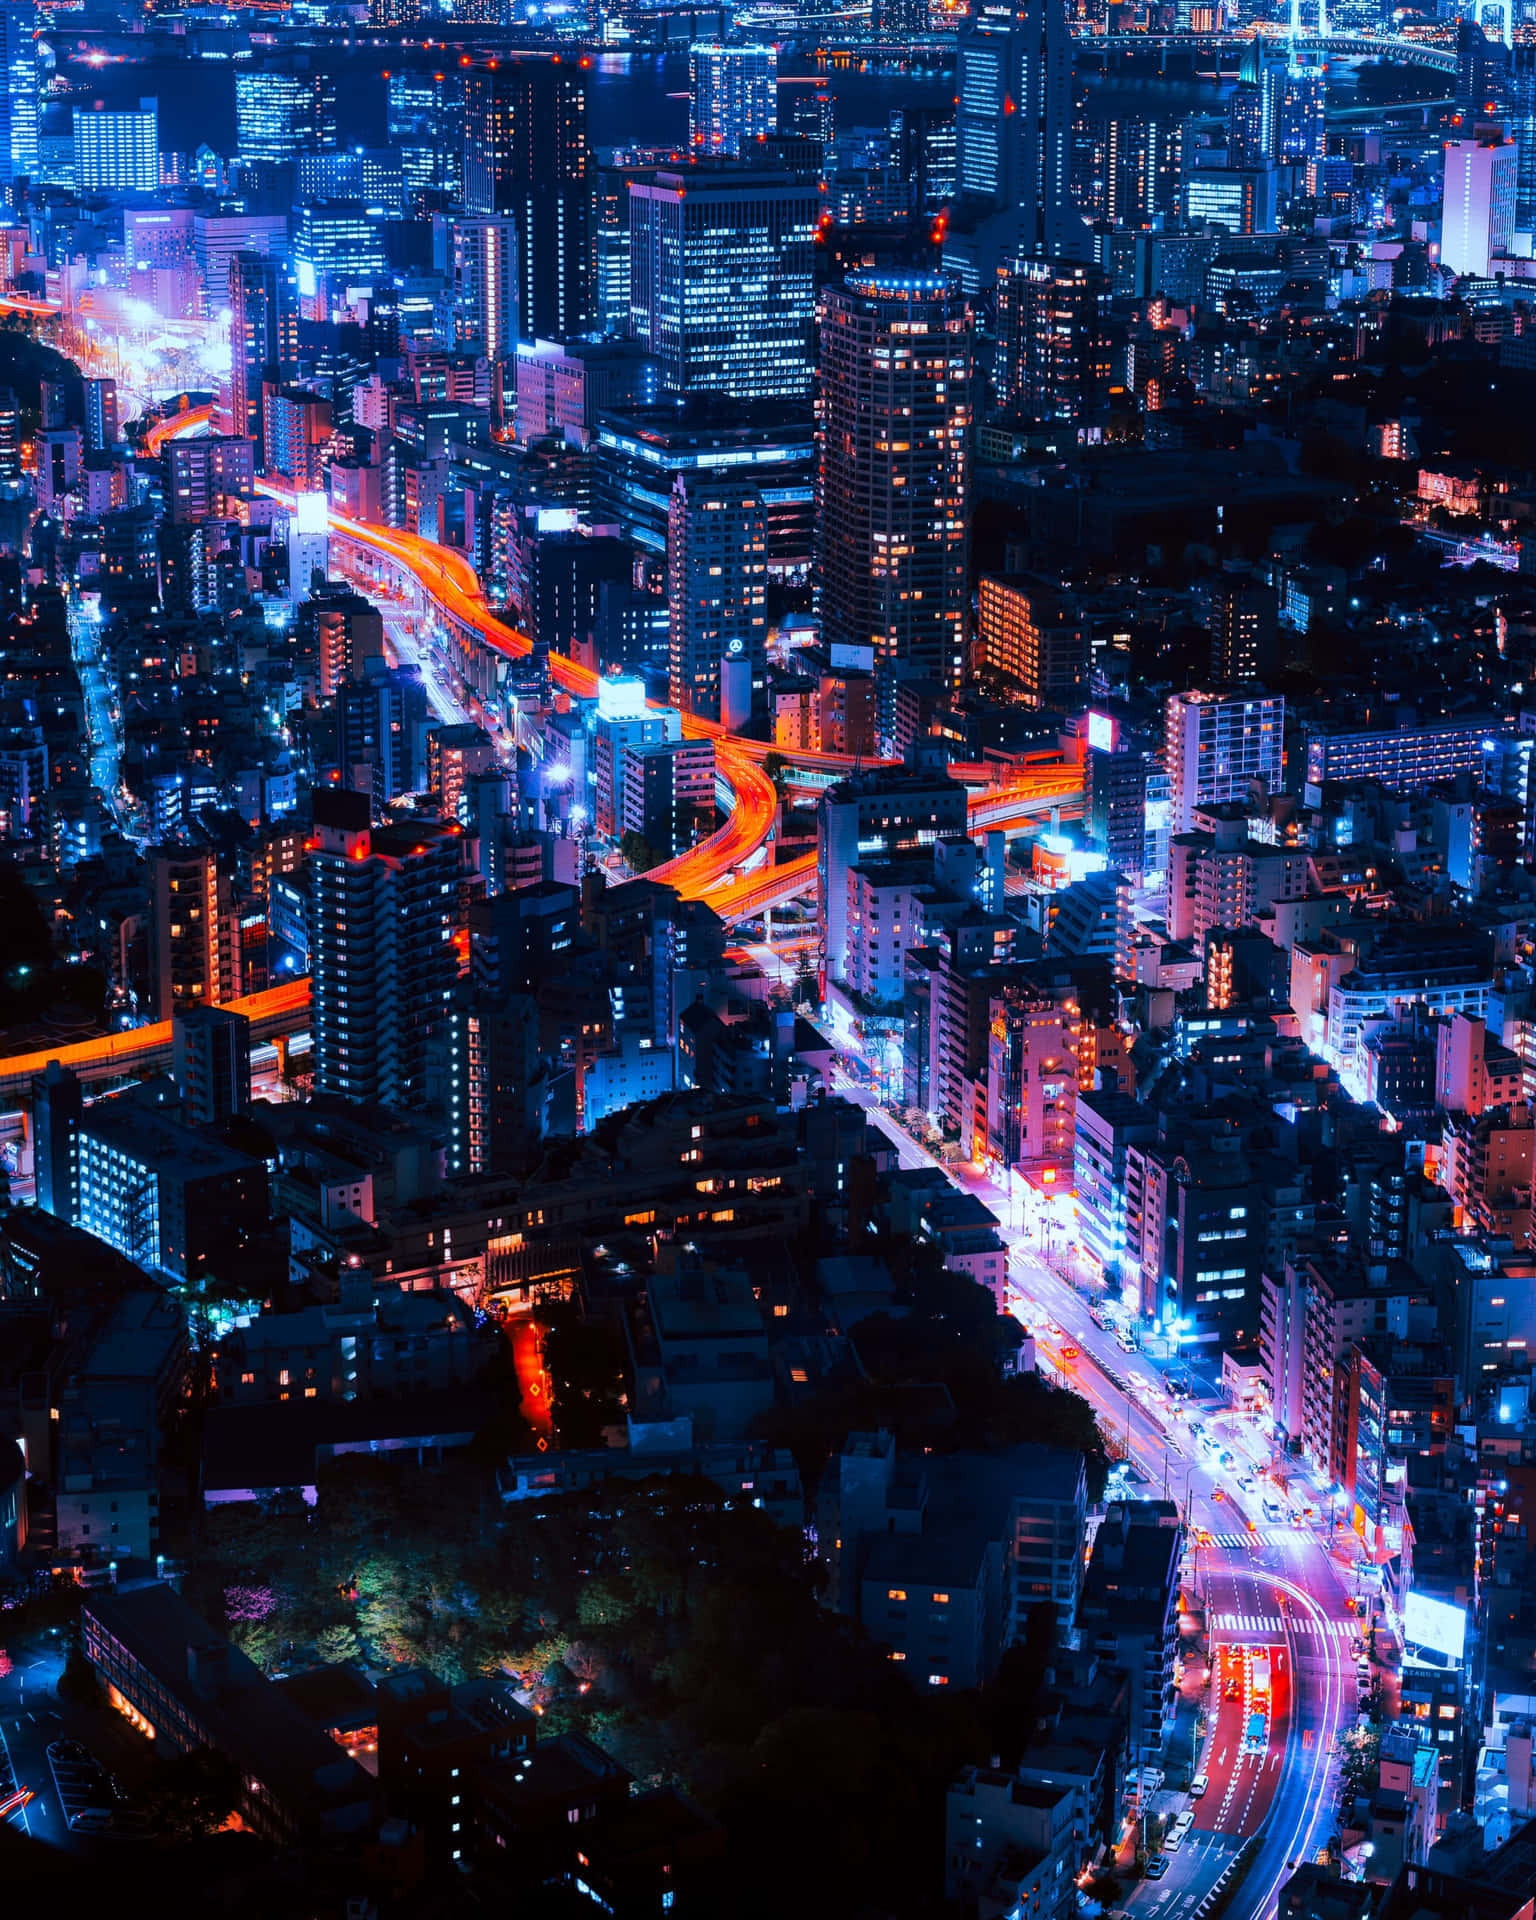 A City At Night